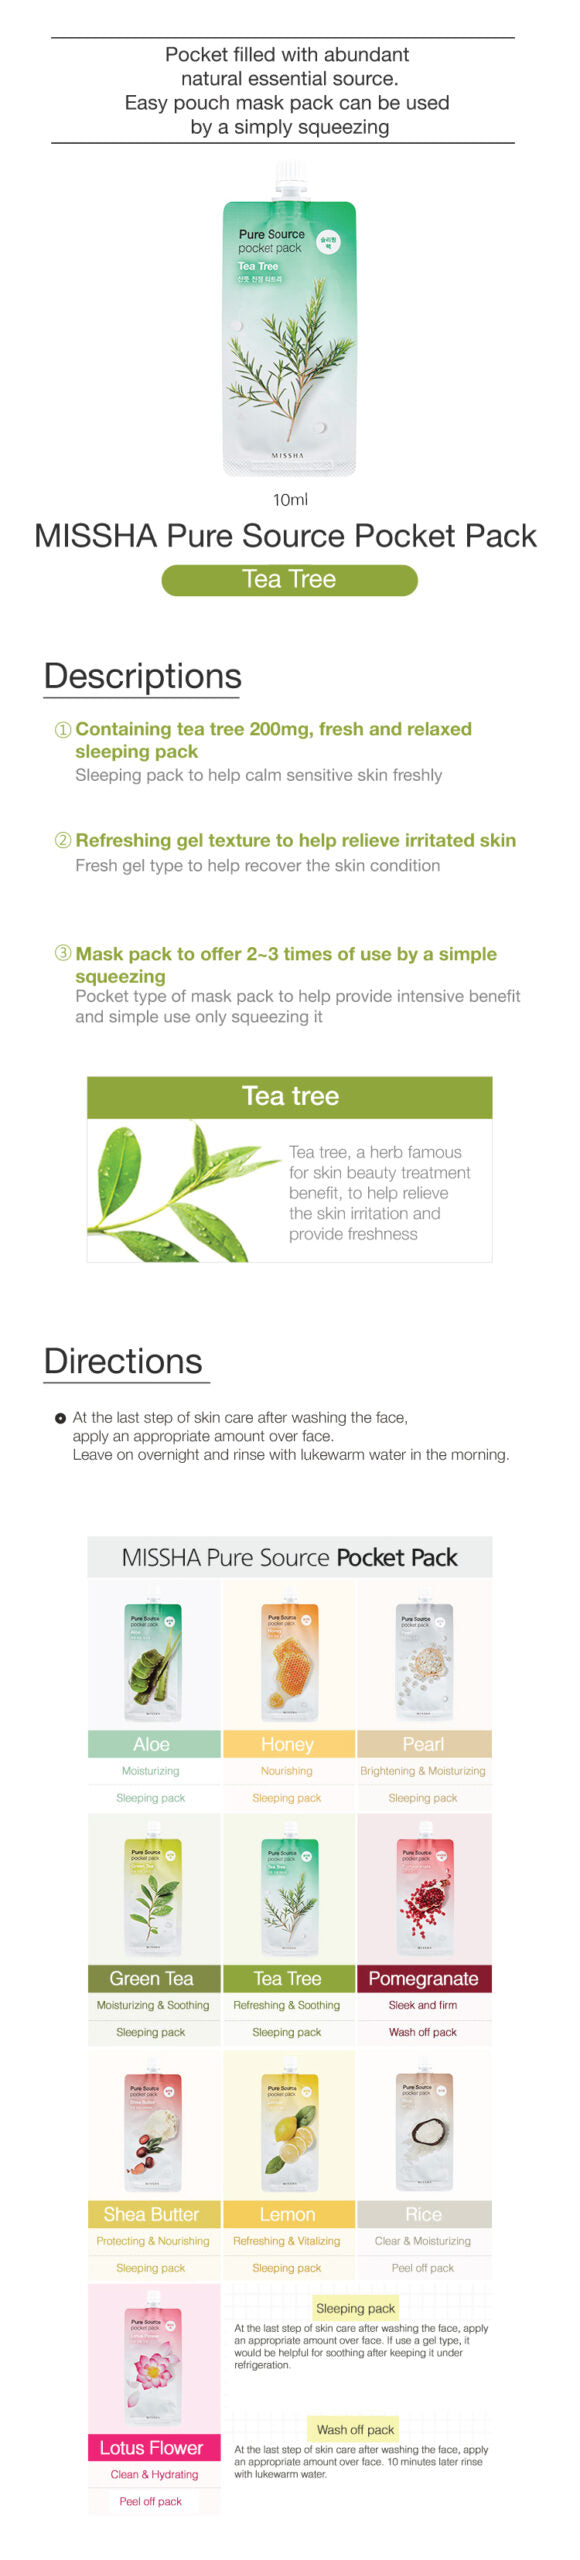 MISSHA Pure Source Pocket Pack Tea Tree 10ml MISSHA